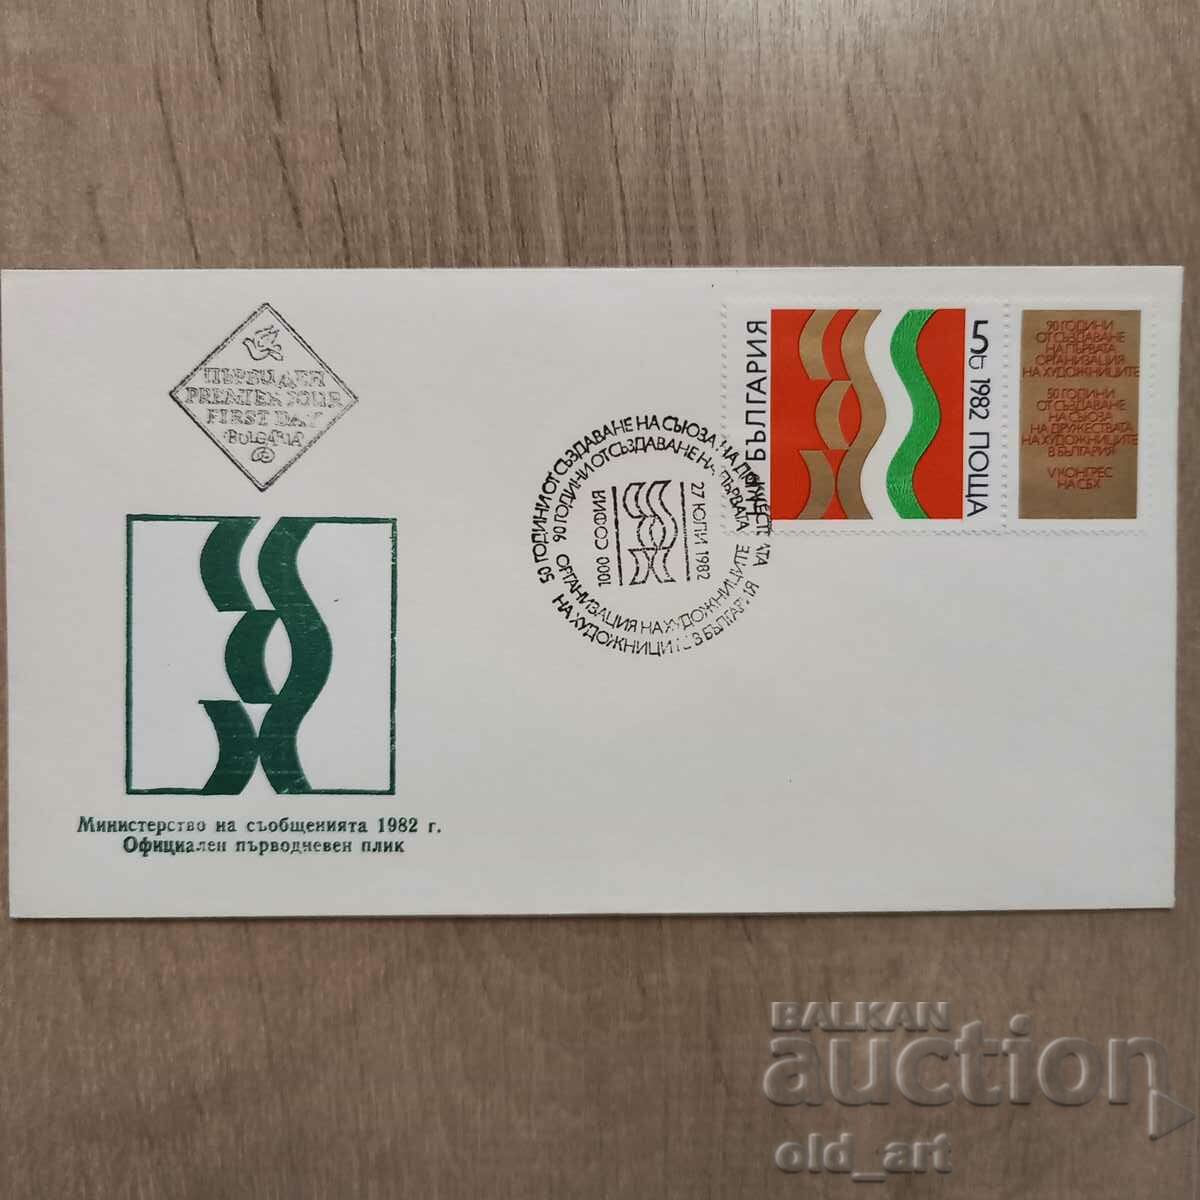 Ταχυδρομικός φάκελος - 90 χρόνια από τη δημιουργία της πρώτης οργάνωσης καλλιτεχνών